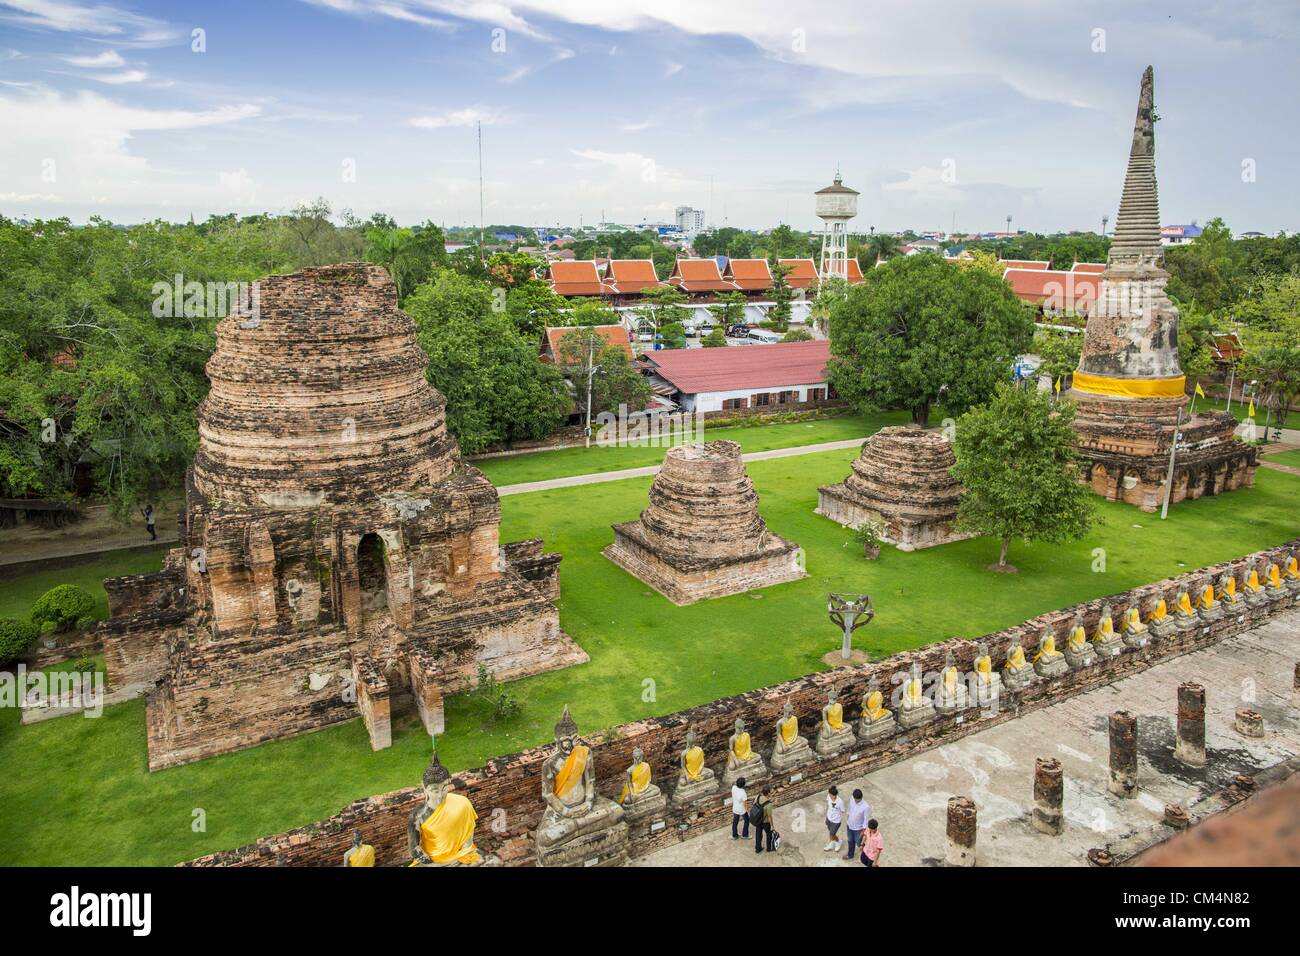 3. Oktober 2012 - Ayutthaya, Ayutthaya, Thailand - einige der zerstörten Chedis am Wat Yai Chaimongkhon in Ayutthaya. Wat Yai Chaimongkhon ist eines des wichtigsten Tempels in Ayutthaya und wurde 1357 gebaut. Ayutthaya ist die ehemalige kaiserliche Hauptstadt der damaligen Siam, heute Thailand. Ayutthaya wurde wurde um 1350 gegründet und der zweite Hauptstadt von Siam nach Sukhothai. Ayutthaya Lage zwischen China, Indien und dem Malaiischen Archipel gemacht Ayutthaya Handelszentrum der das Seengebiet. Um 1700 war Ayutthaya die größte Stadt der Welt mit insgesamt 1 Million Einwohner. Das Reich von Ayutthaya und Stockfoto